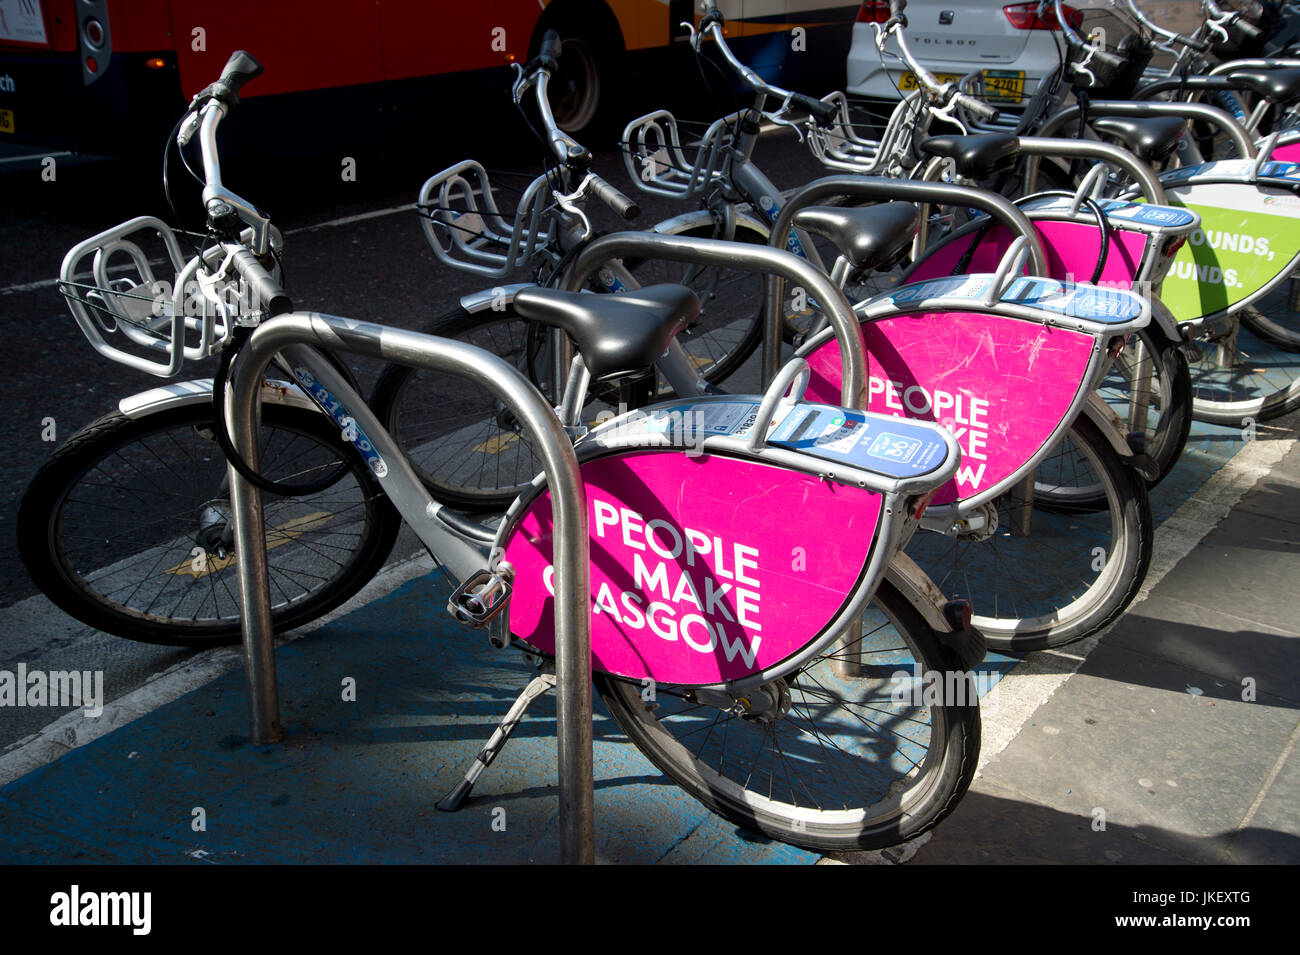 La Scozia. Glasgow. Le biciclette a noleggio con slogan "persone fare Glasgow". Foto Stock